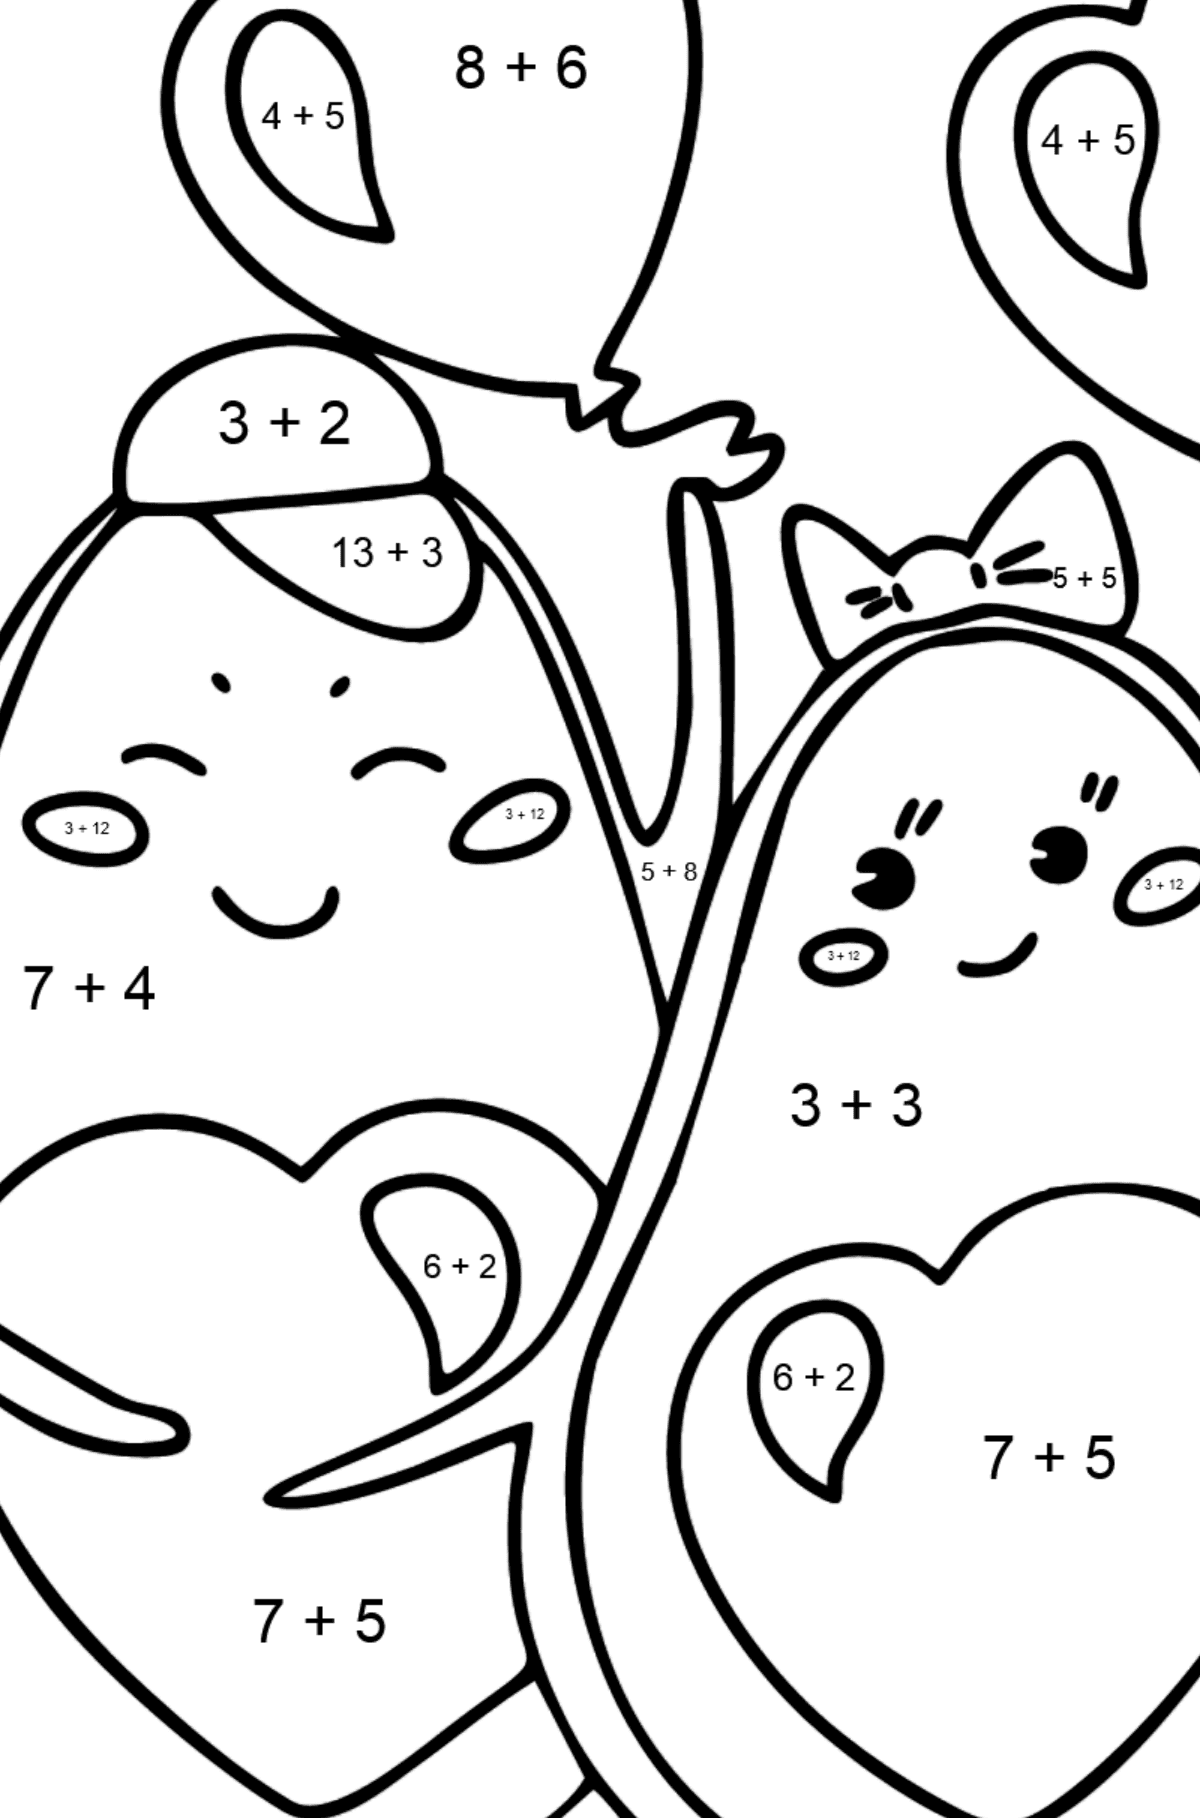 Ausmalbild Avocado in der Liebe - Mathe Ausmalbilder - Addition für Kinder